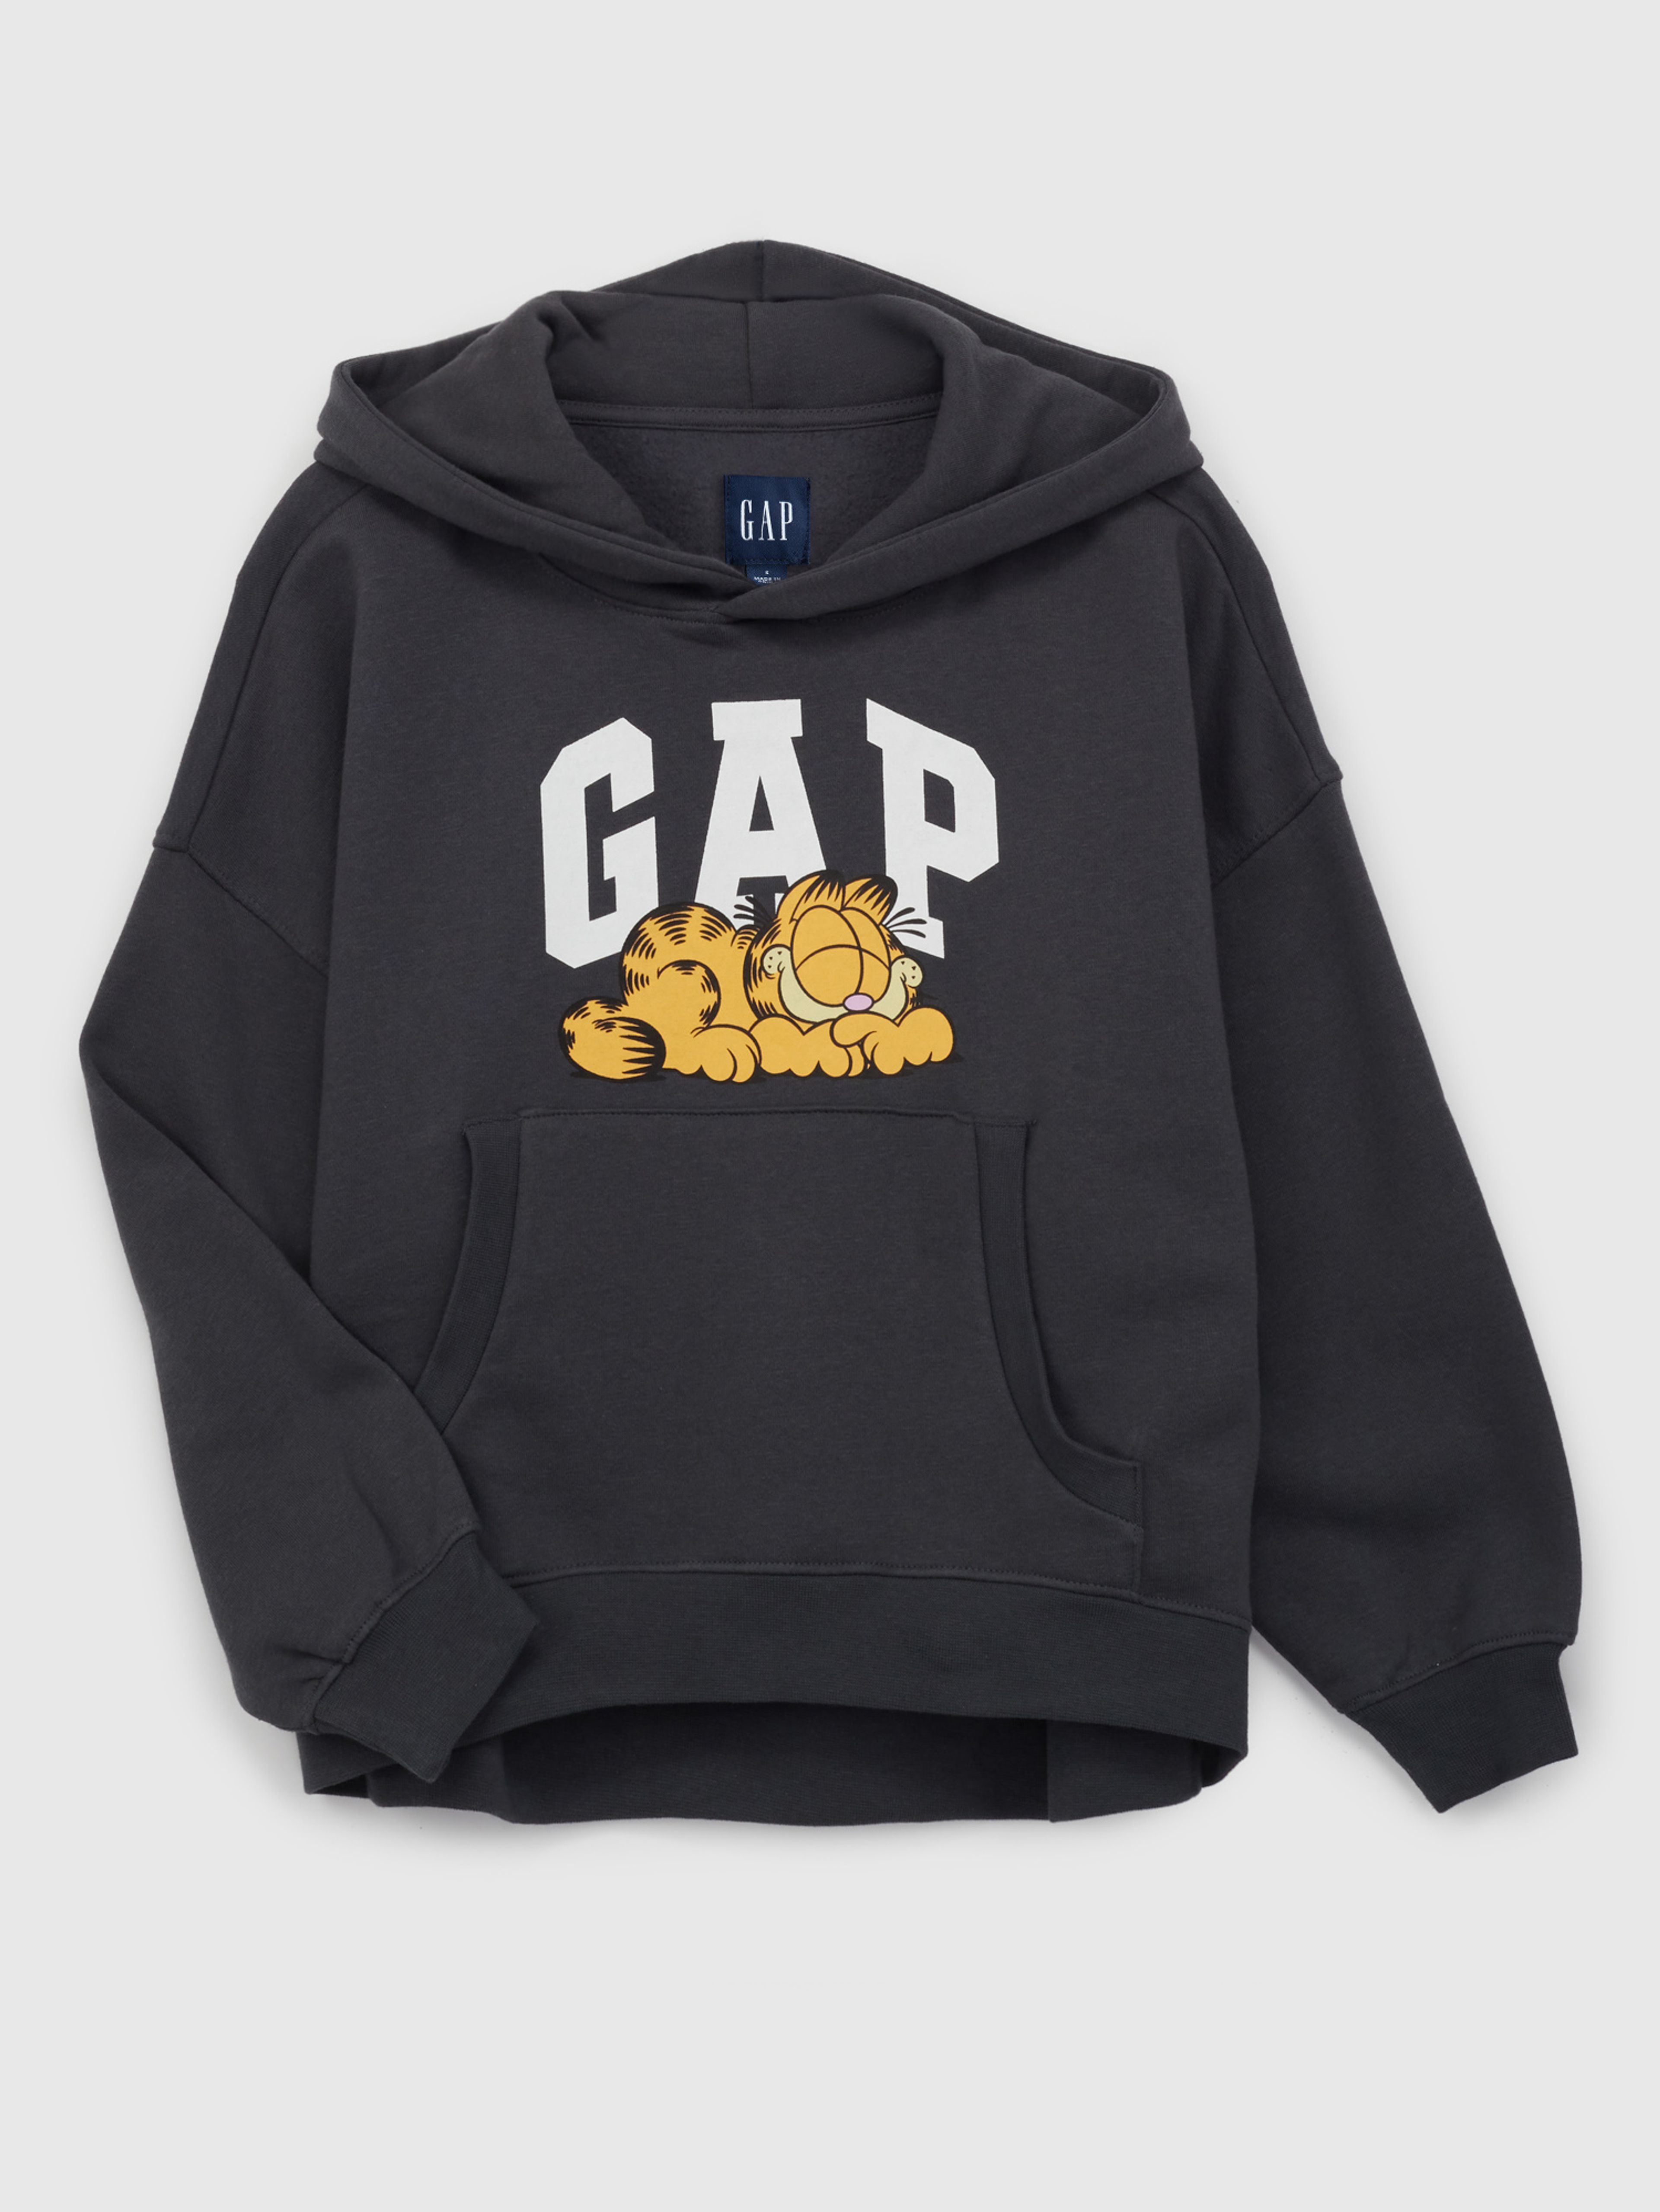 Sweatshirt mit Logo GAP & Garfield